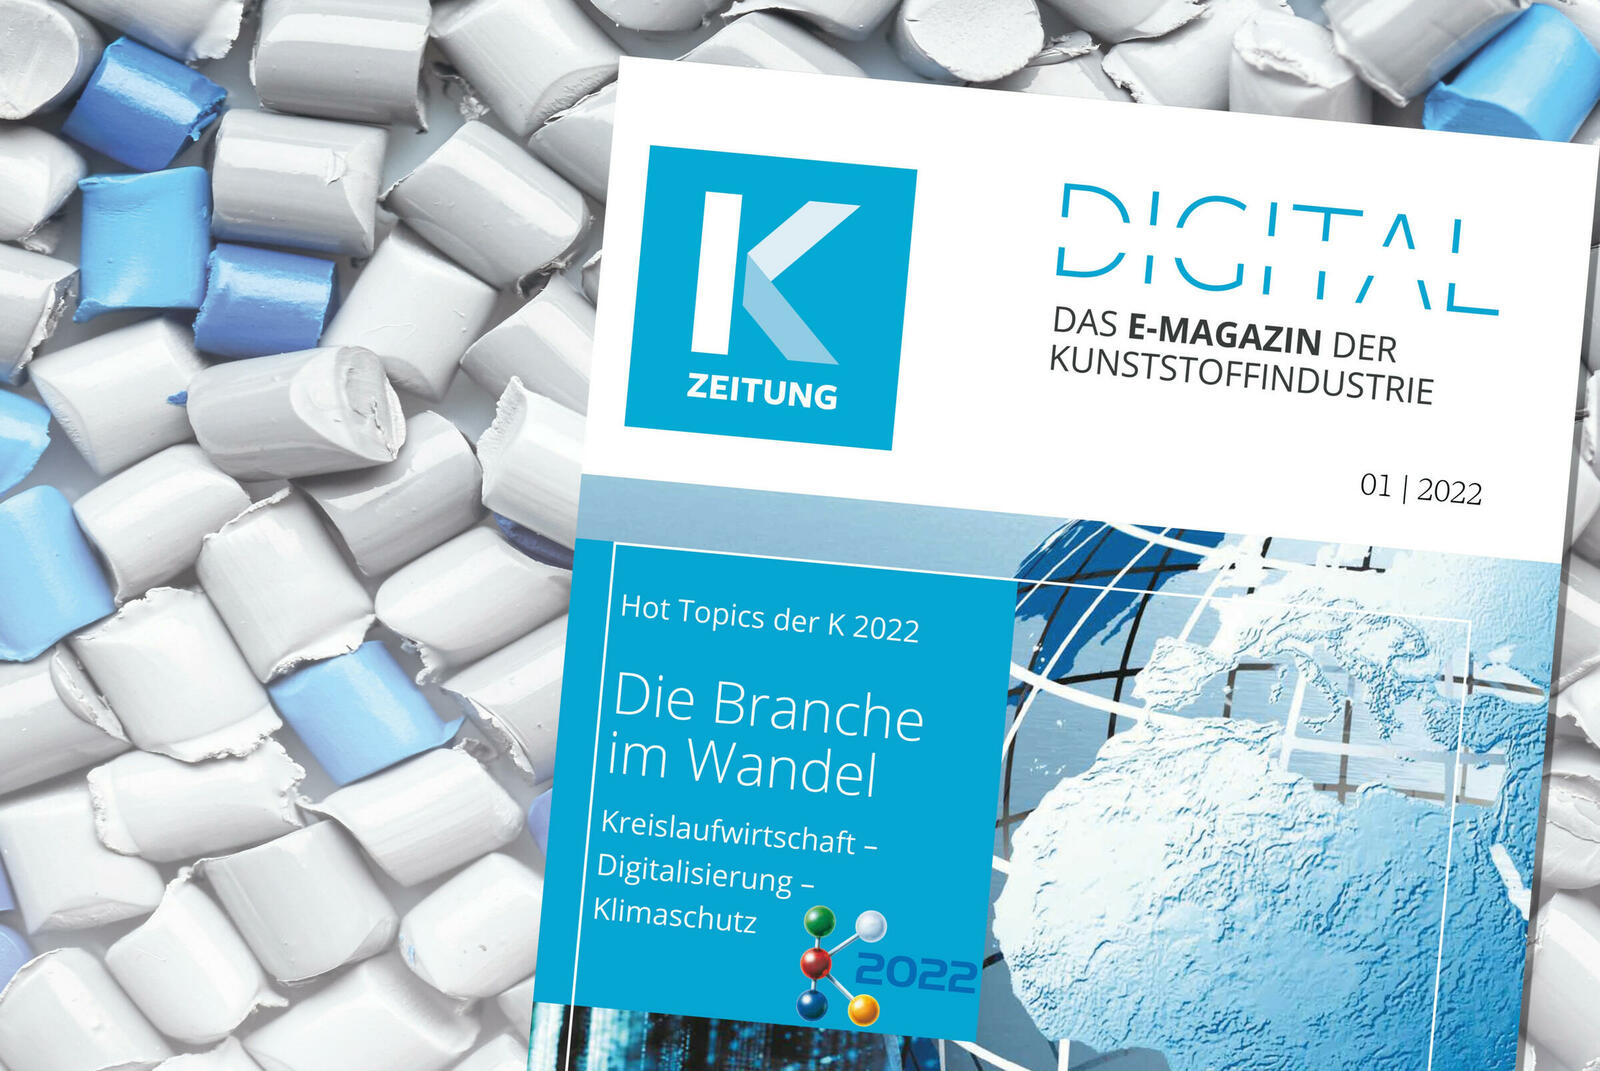 Das E-Magazin der K-ZEITUNG im Vorfeld der K 2022 greift die Hot Topics Kreislaufwirtschaft, Digitialiserung und Klimaschutz auf.